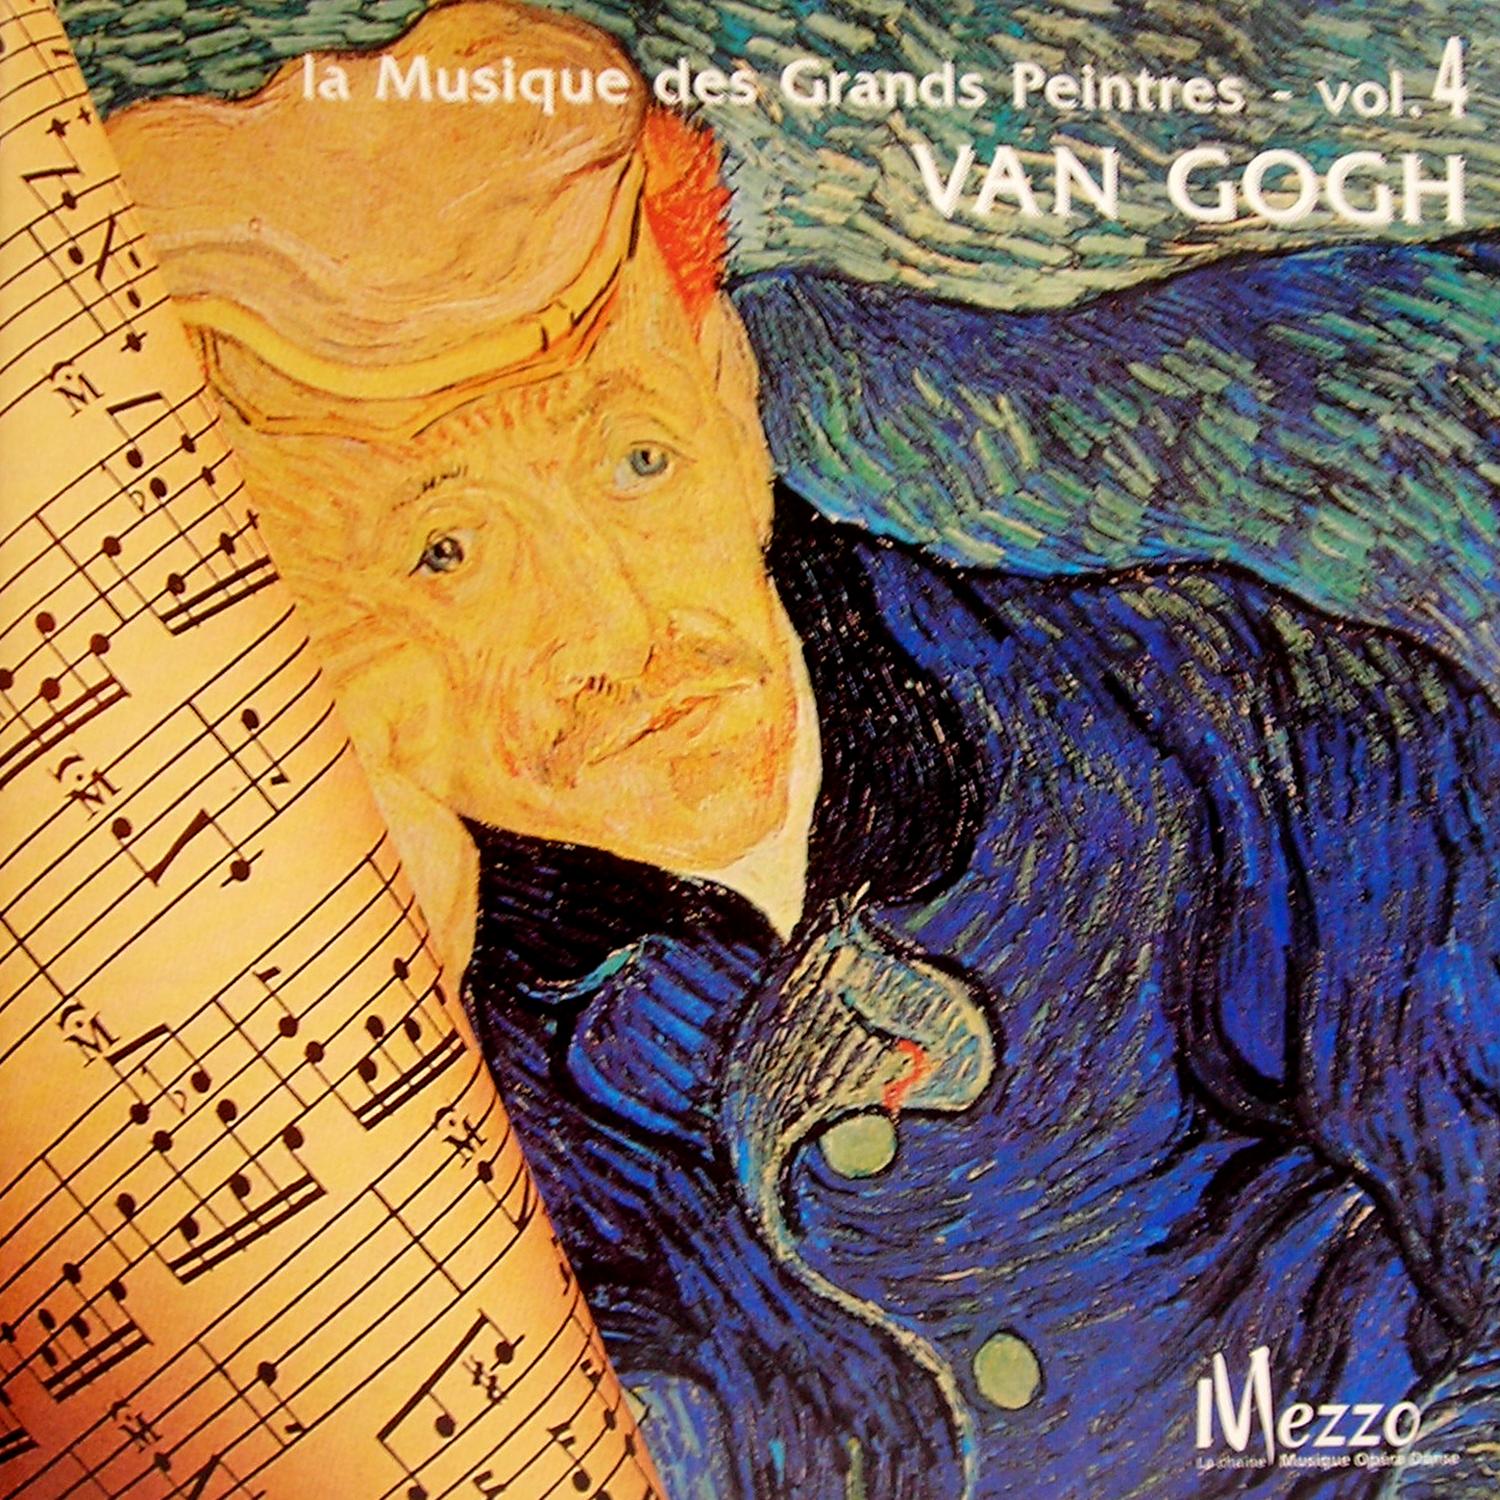 Les Grands Peintres et la Musique (Famous Painters' Music Collection): Van Gogh, Vol. 4/16